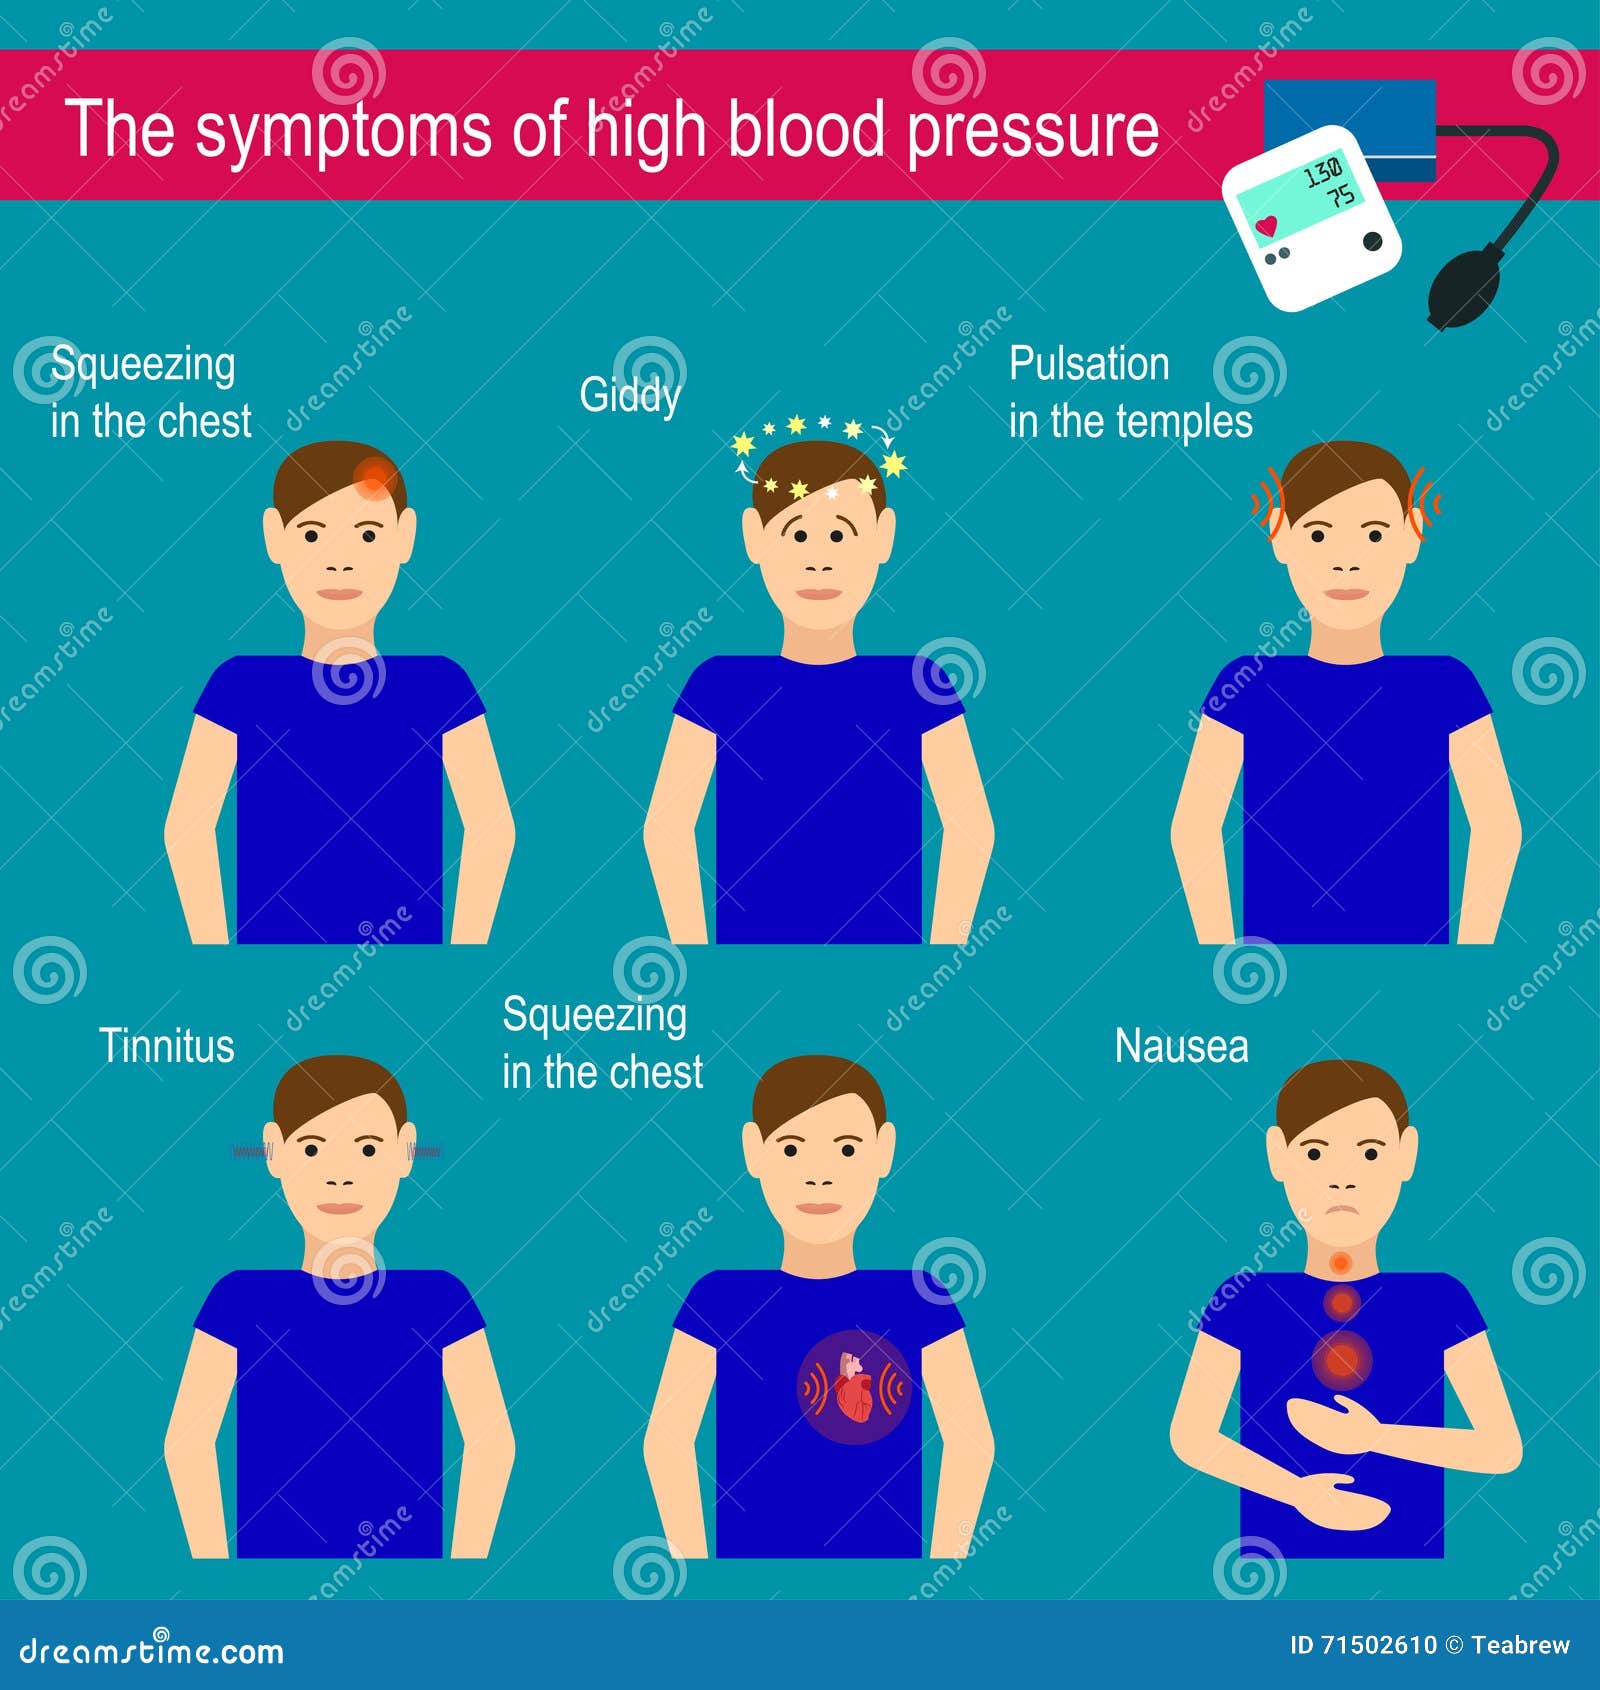 hypertension headaches symptoms a magas vérnyomás 3 nap múlva elmúlik